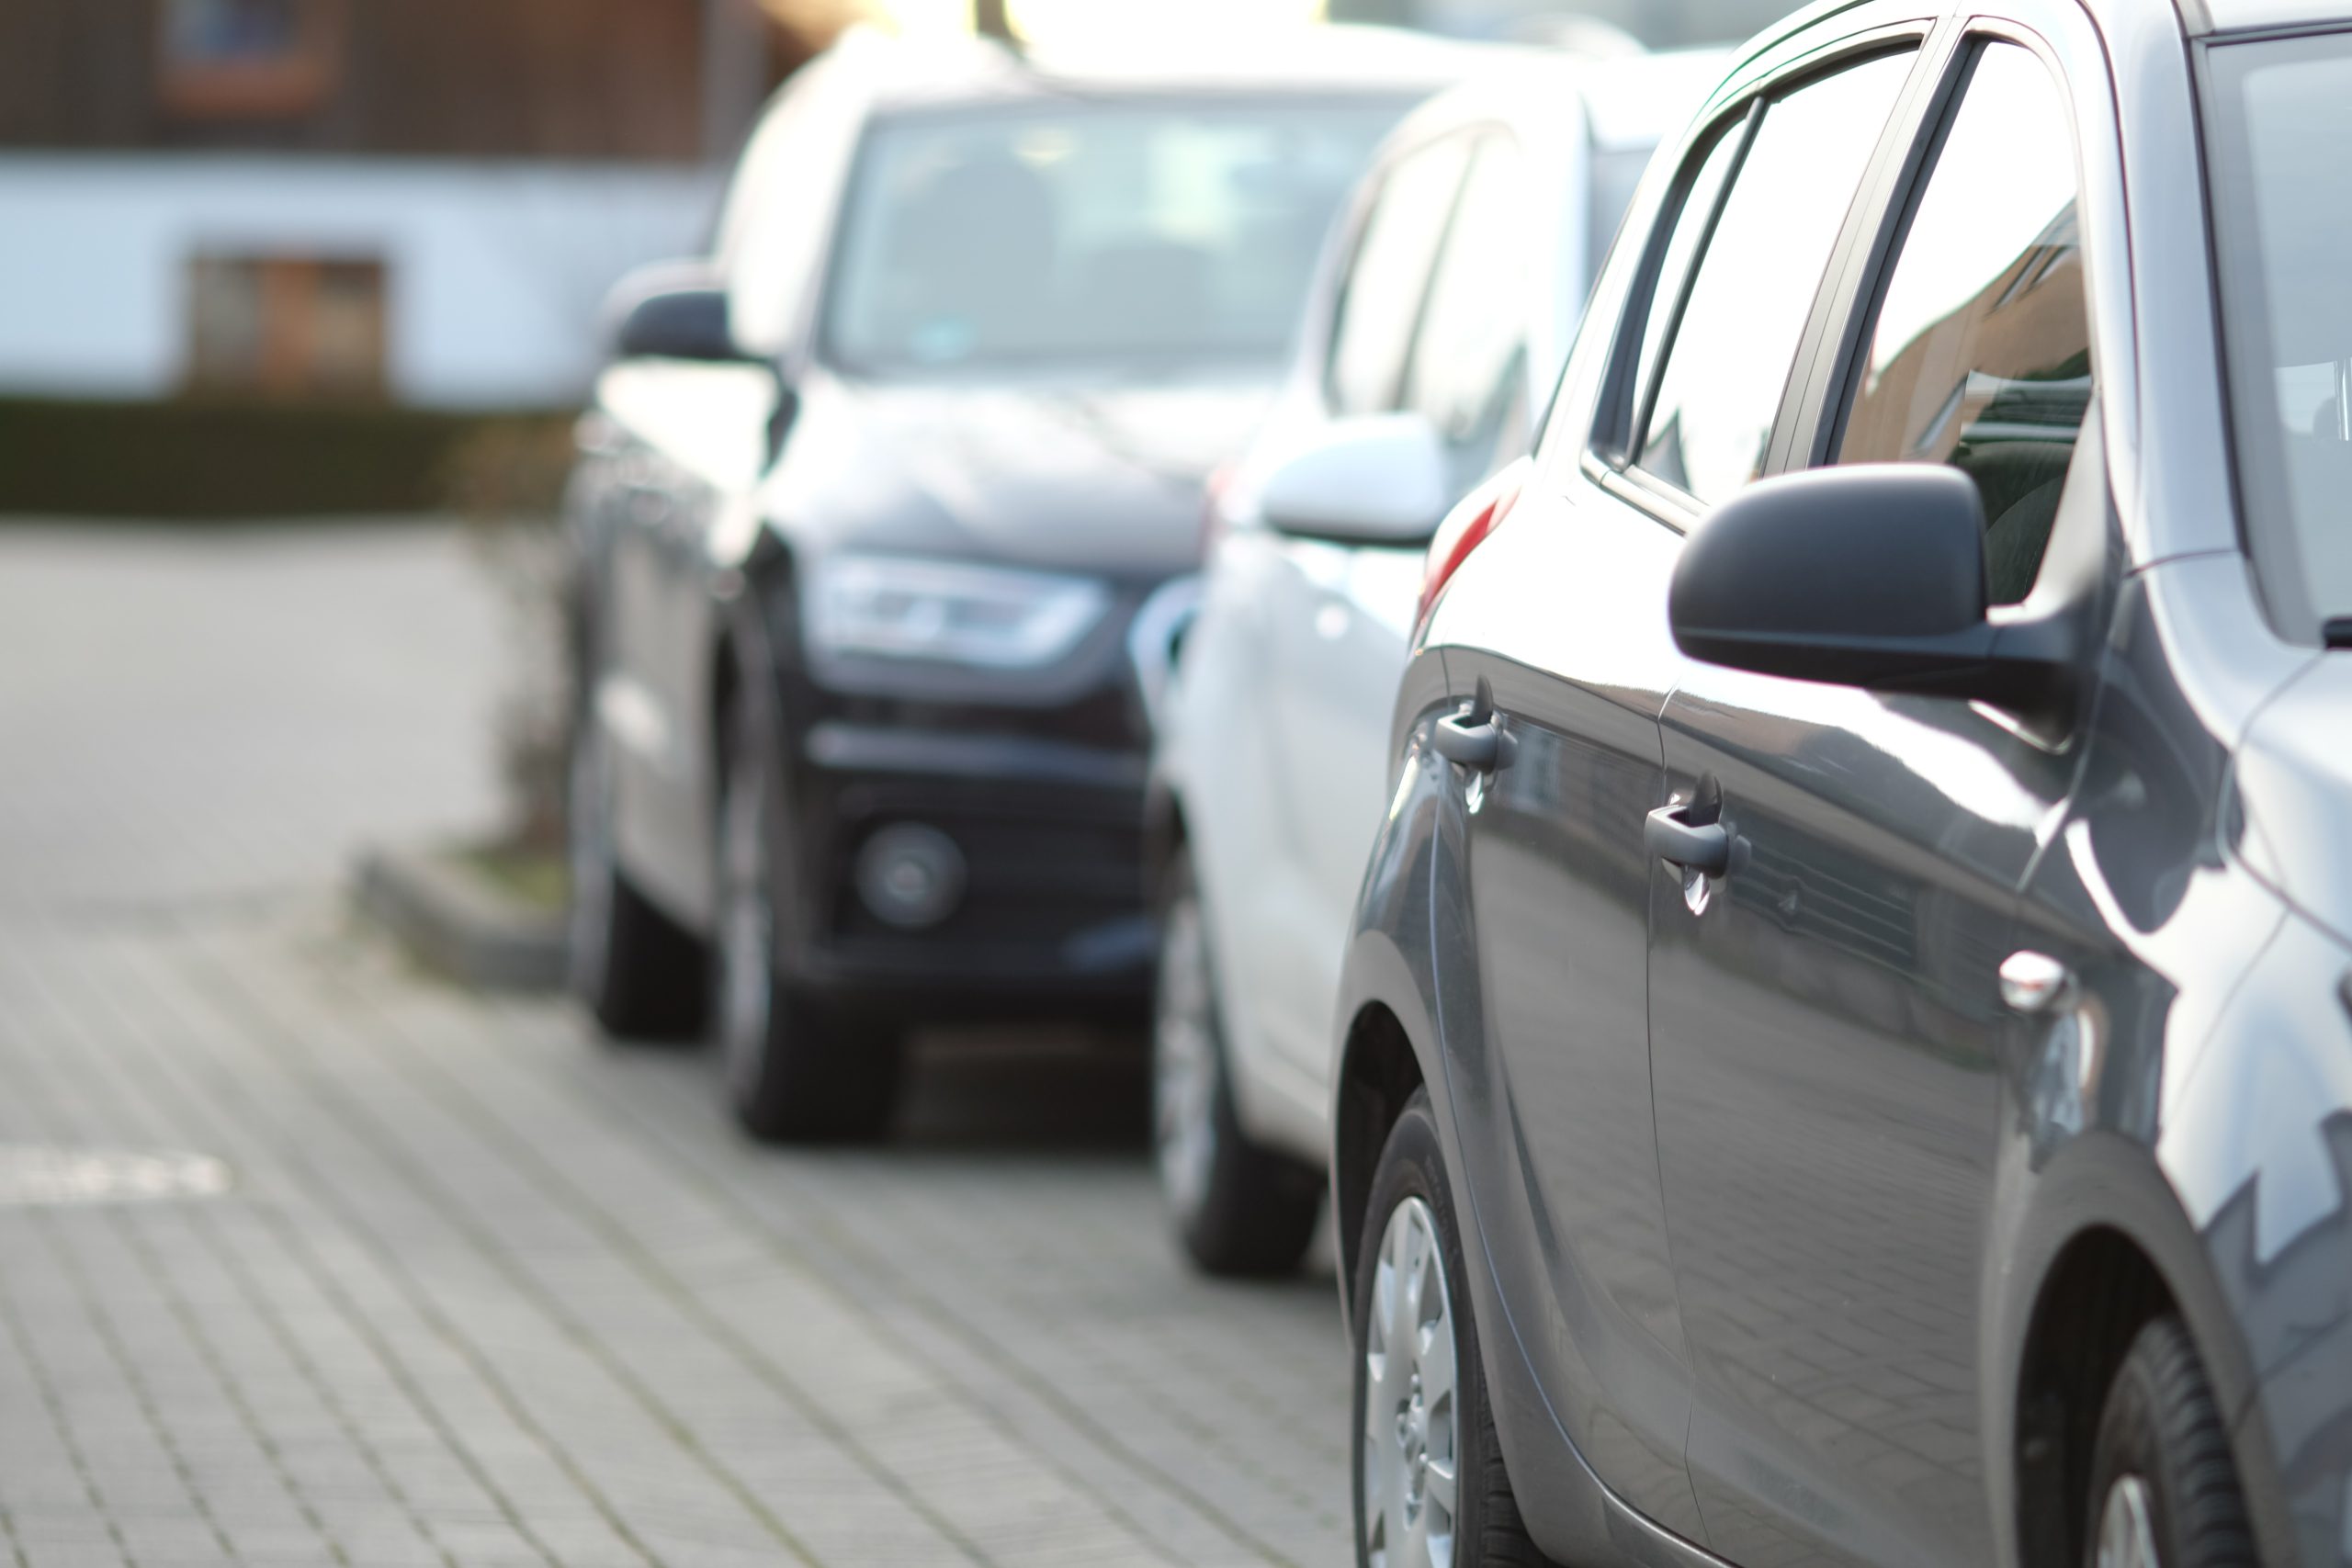 Autos auf dem Parkplatz, fokussiert auf ein stilvolles graues Fahrzeug.